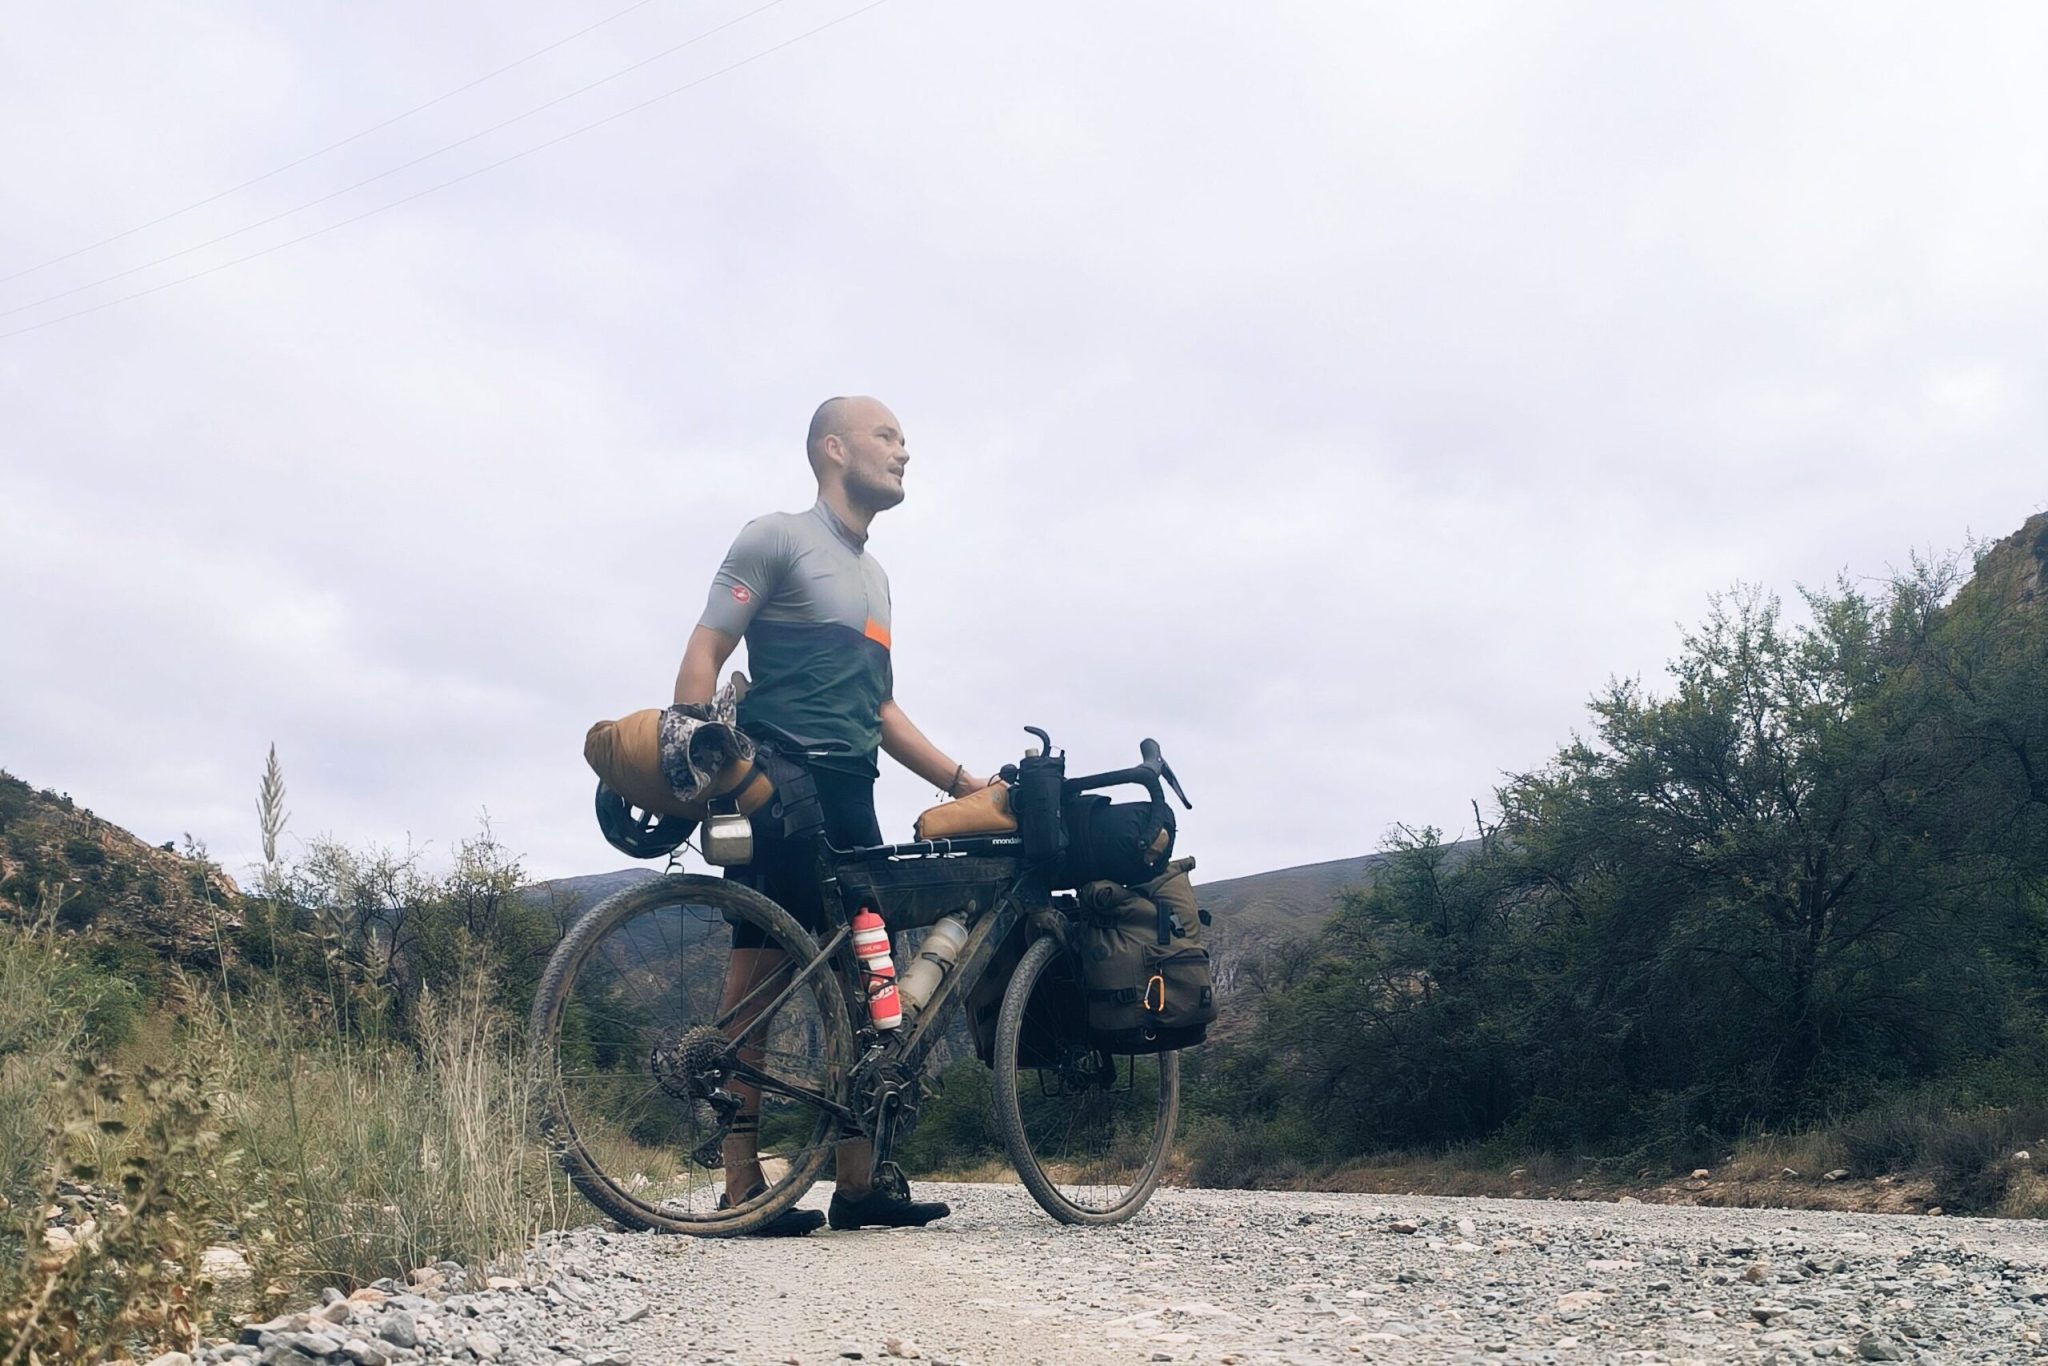 Fotomoment tijdens het bikepacken in Zuid Afrika